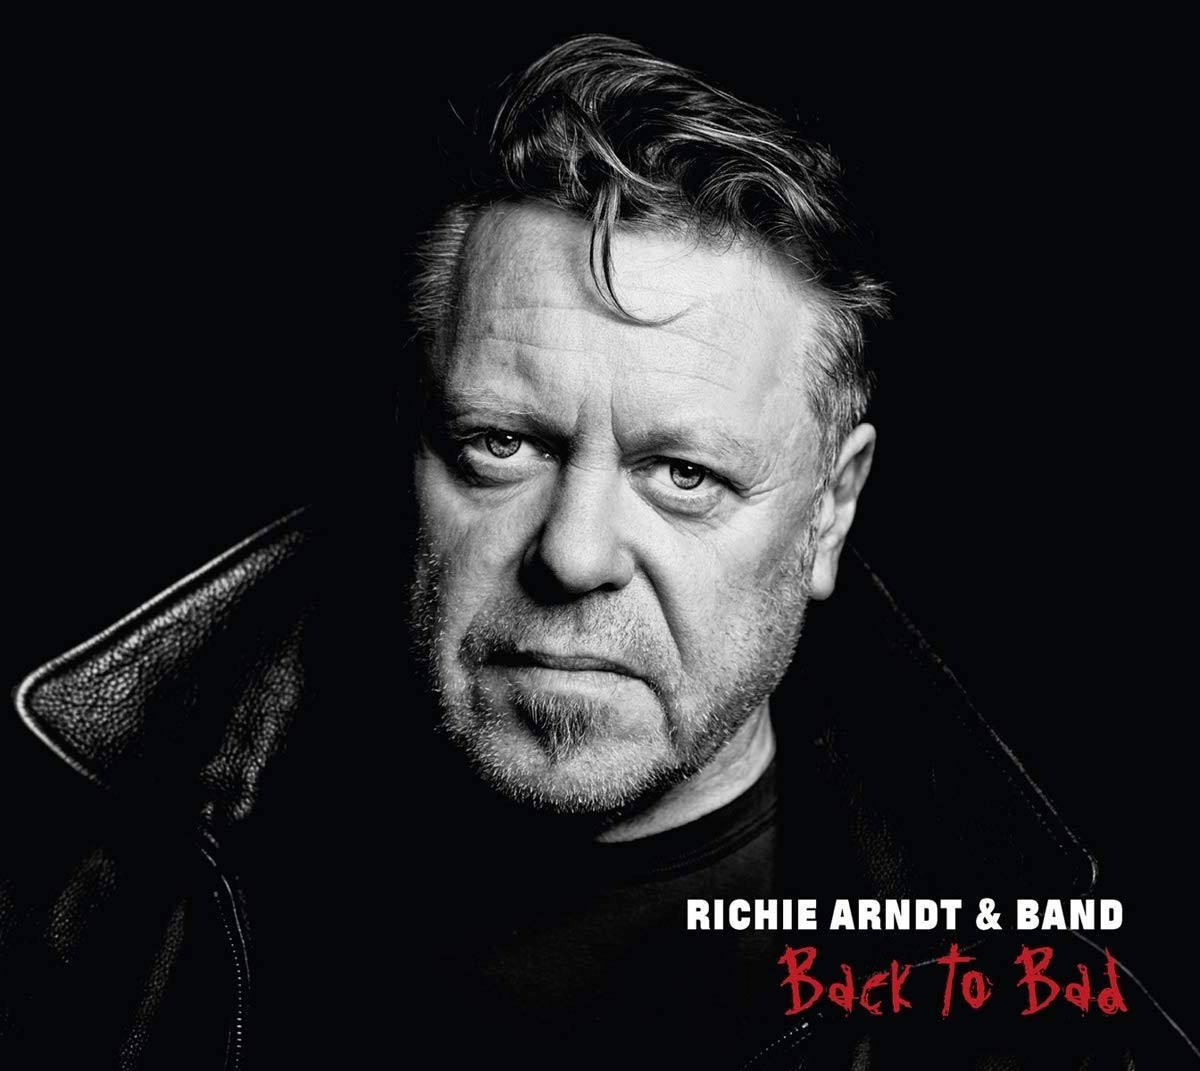 Richie Arndt & Band